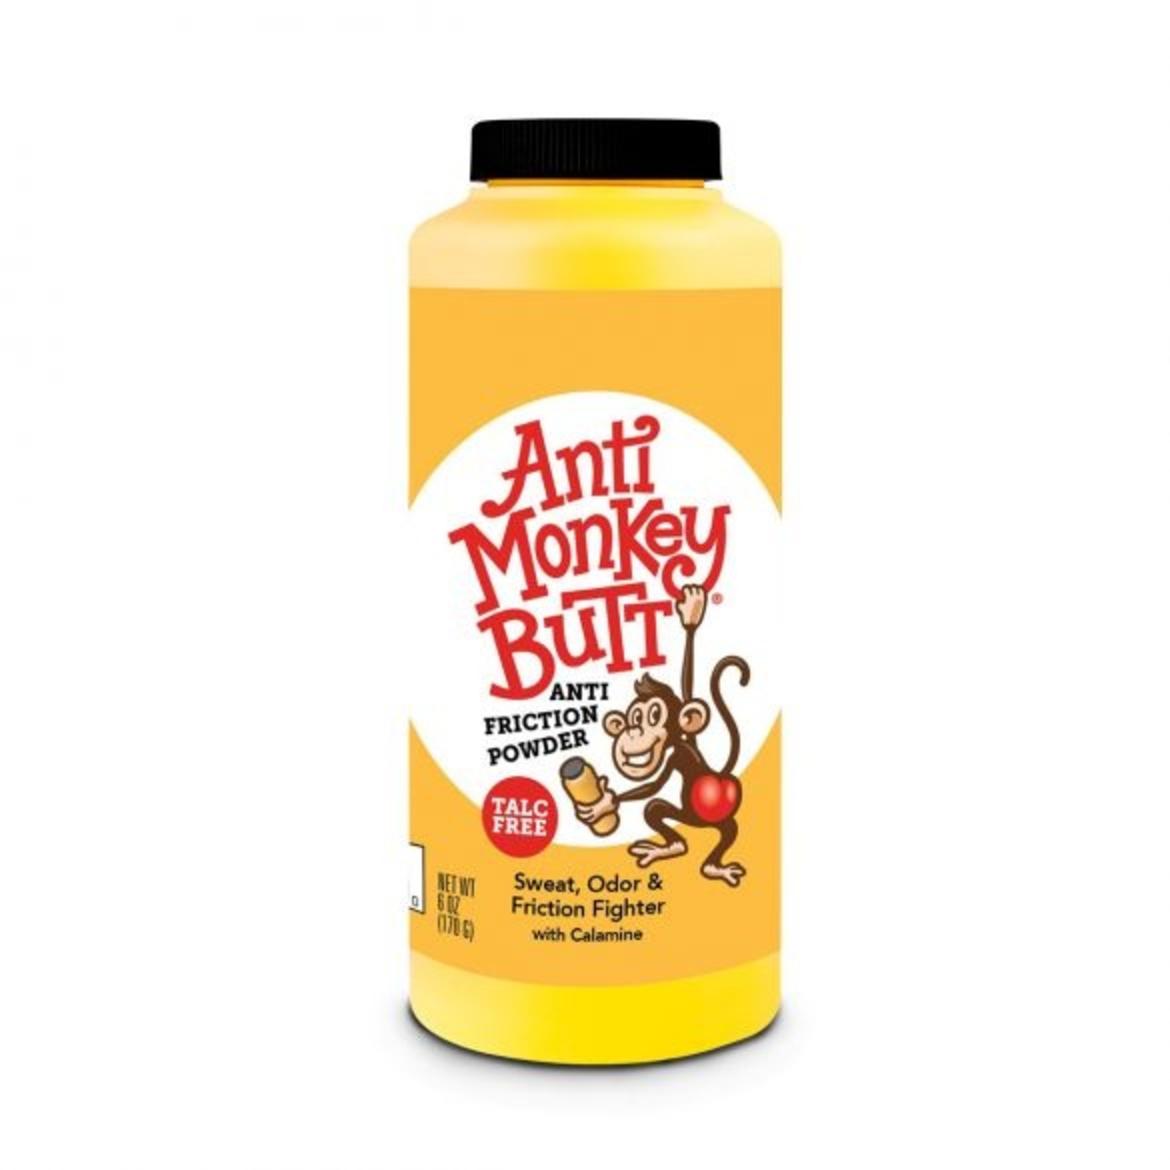 Anti Monkey Butt Anti Friction Powder